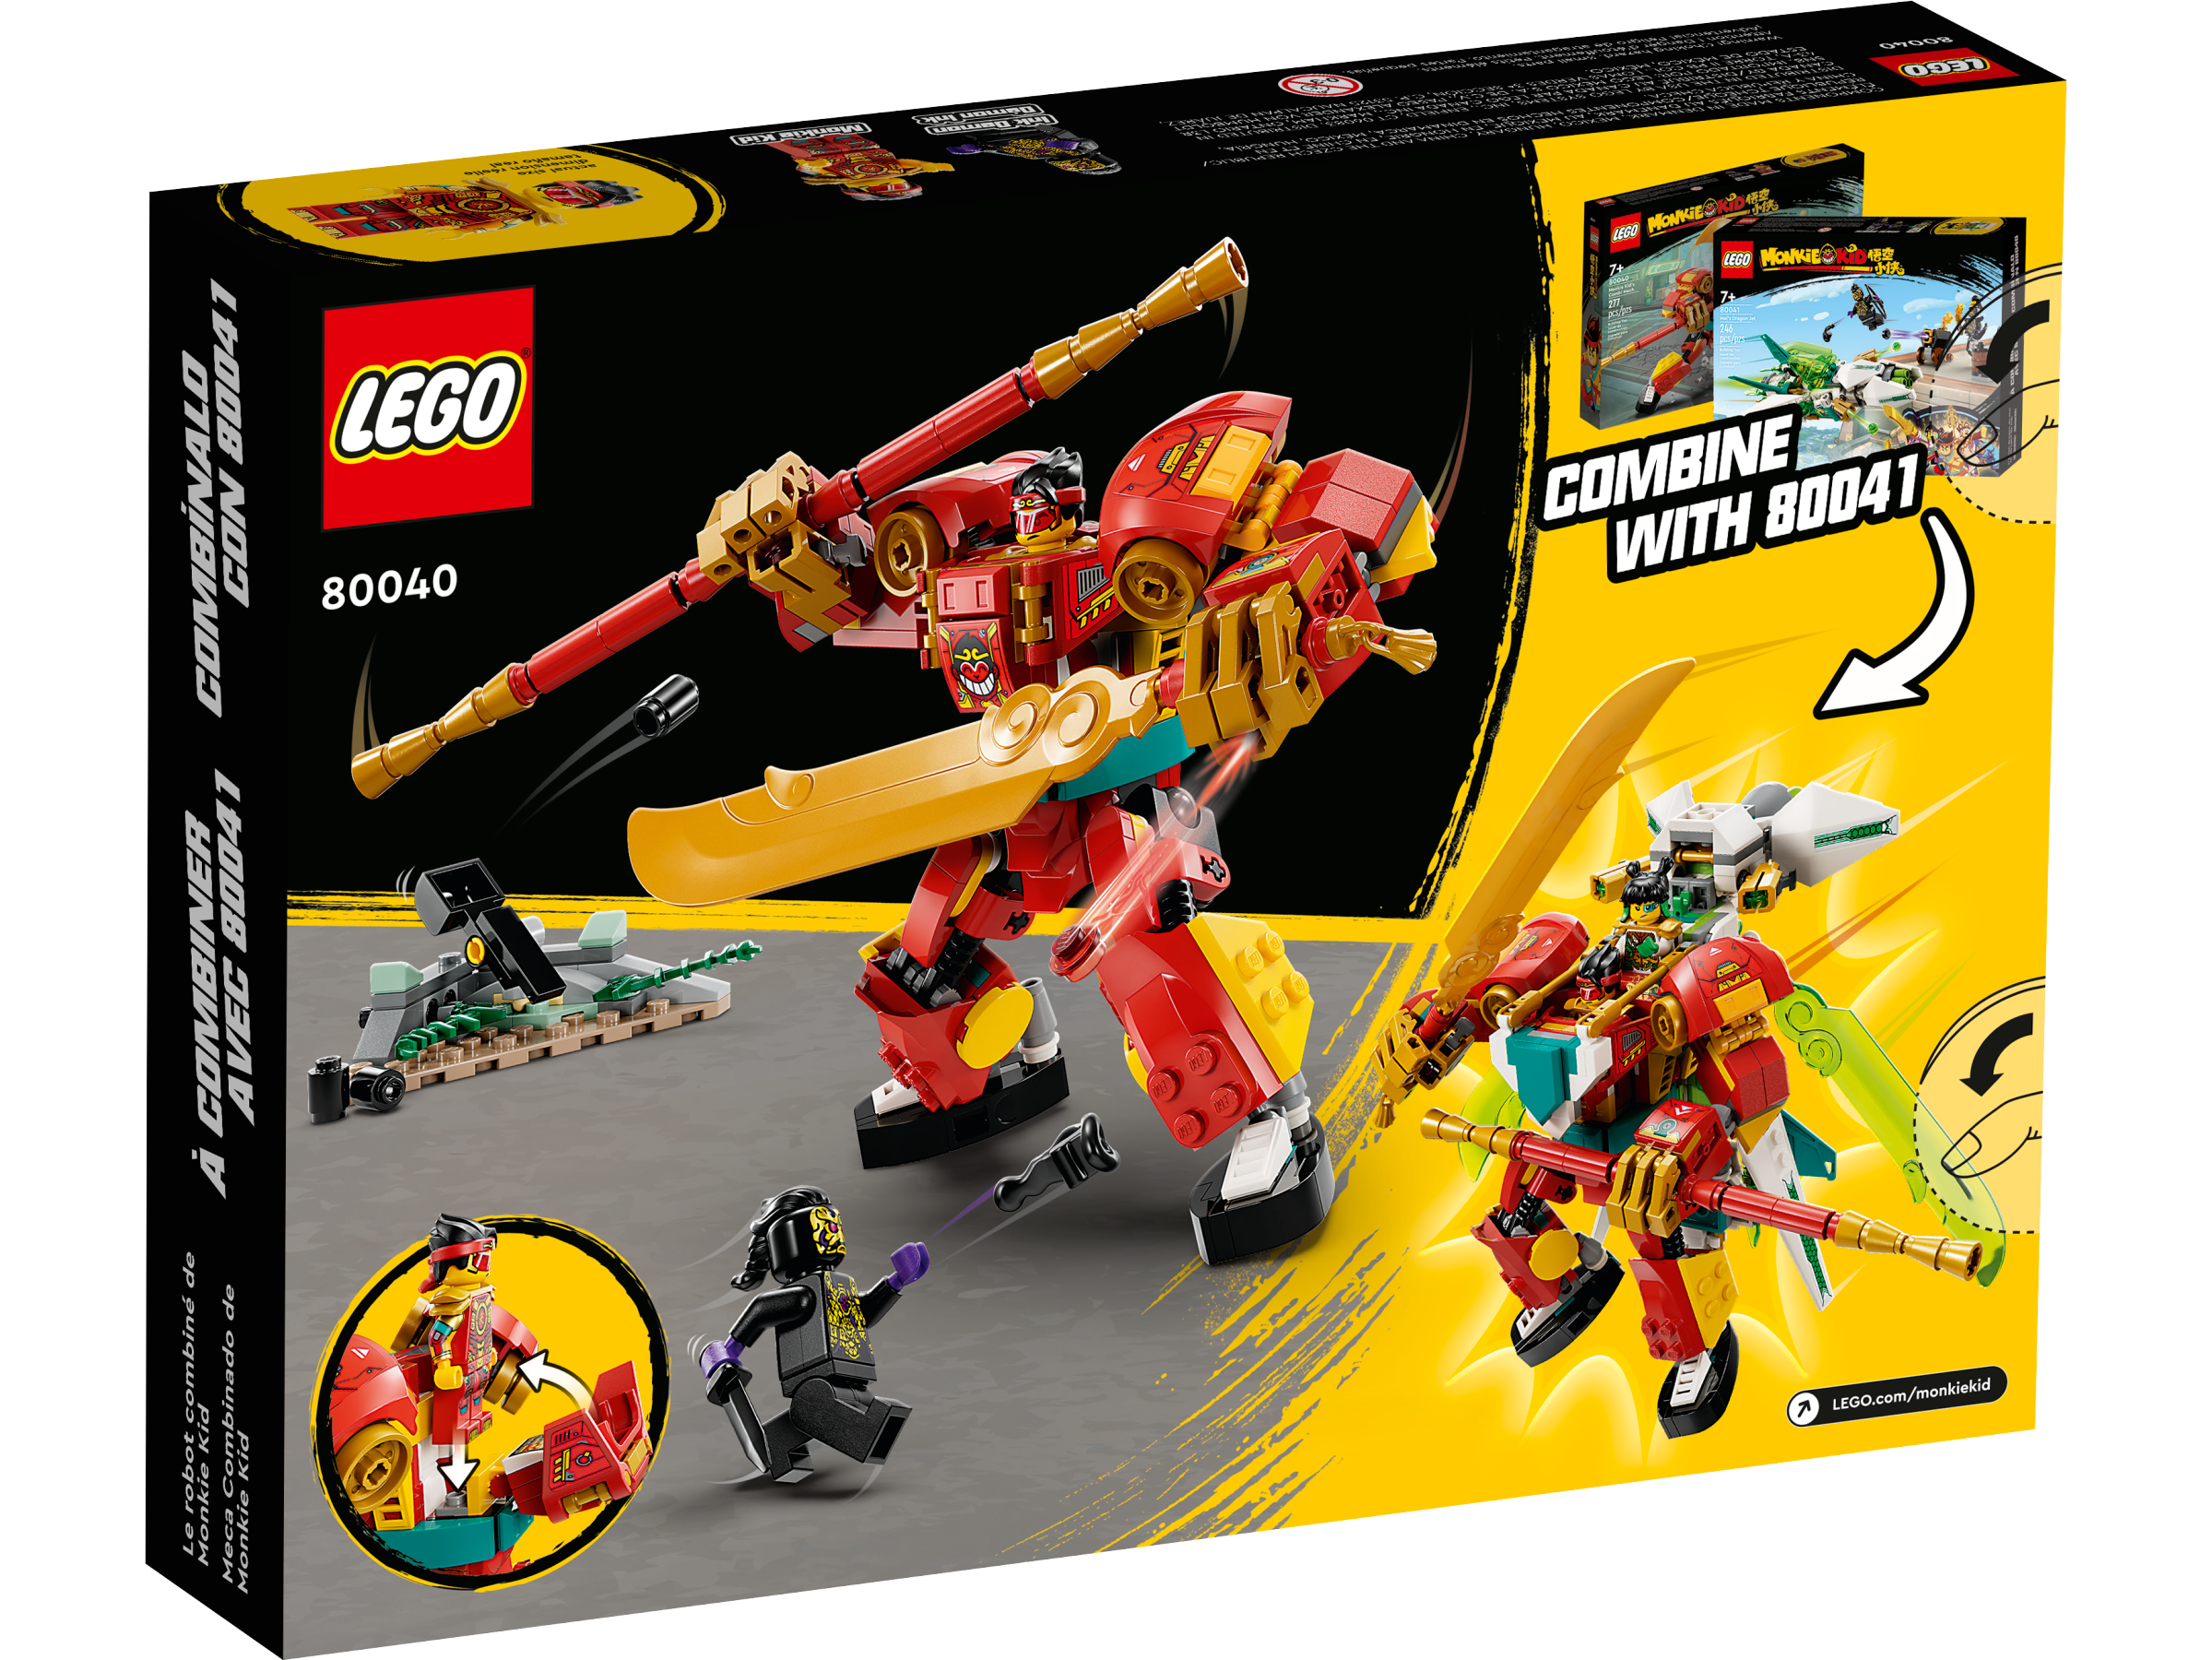 LEGO 30656 Monkey King Marketplace